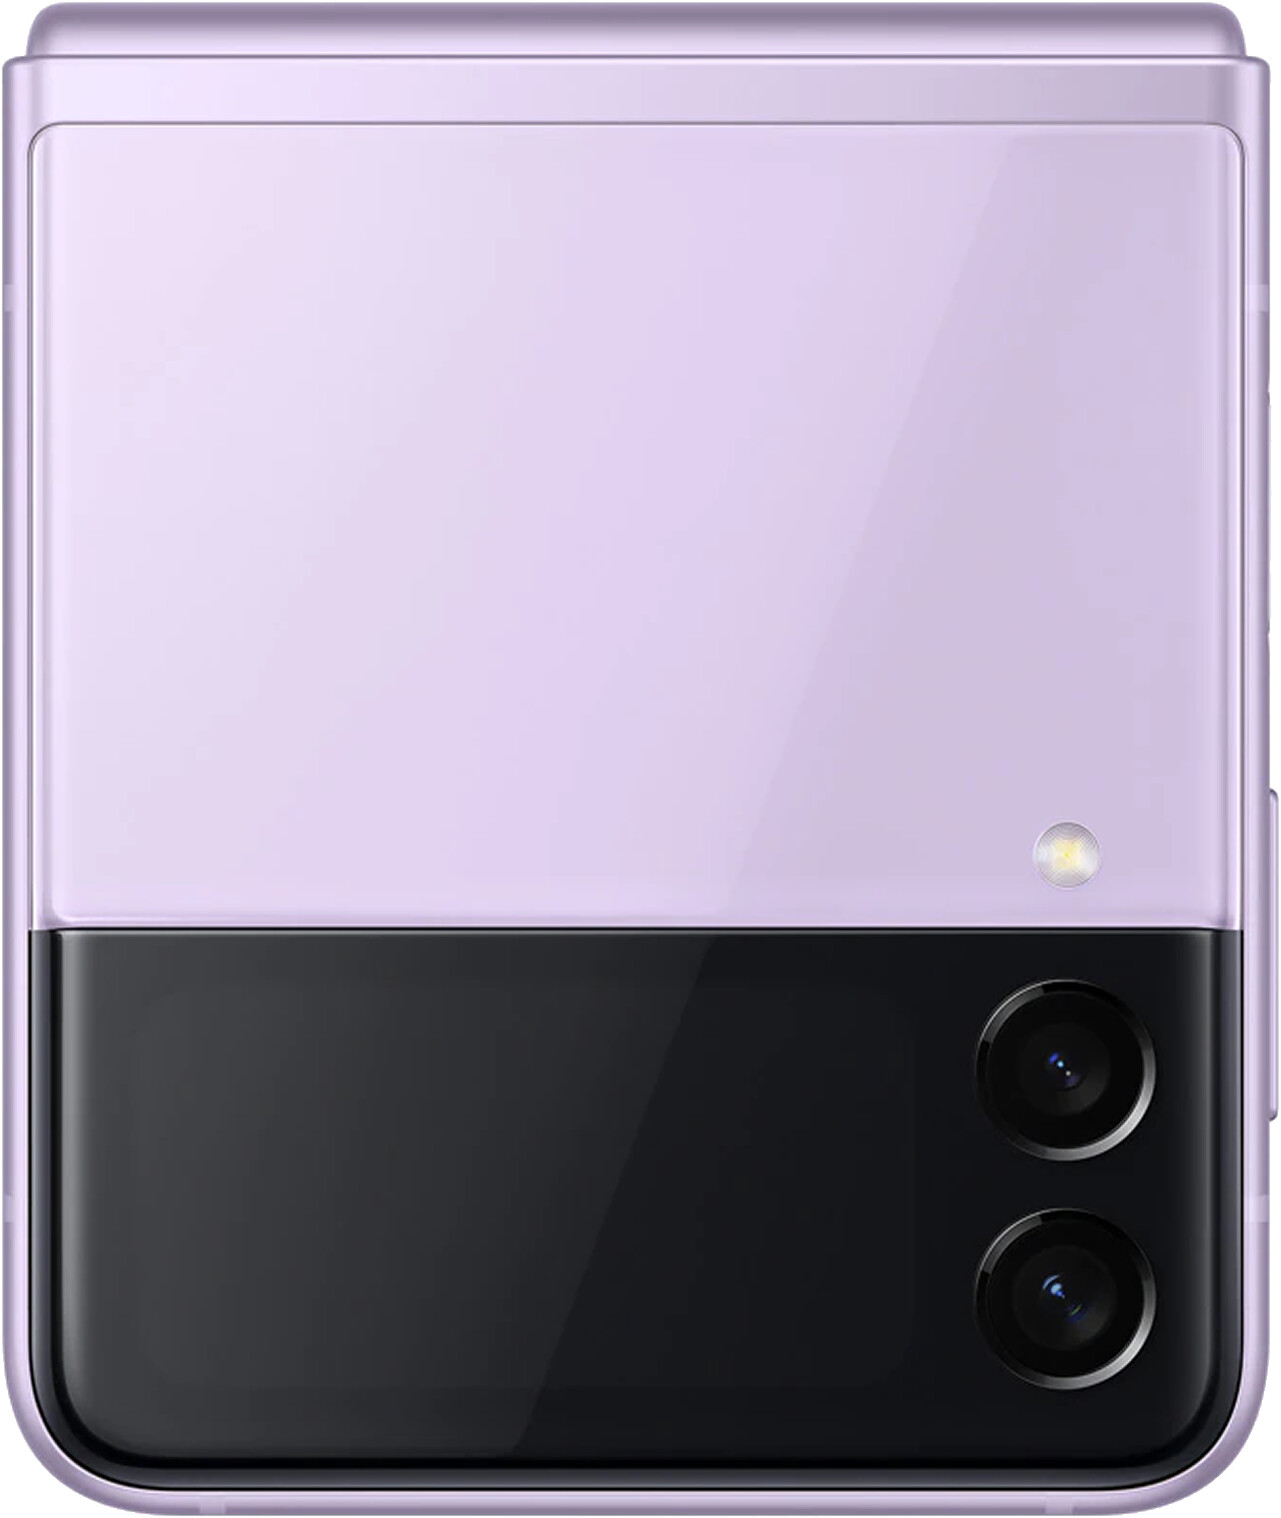 Samsung Galaxy Z Flip4 128GB